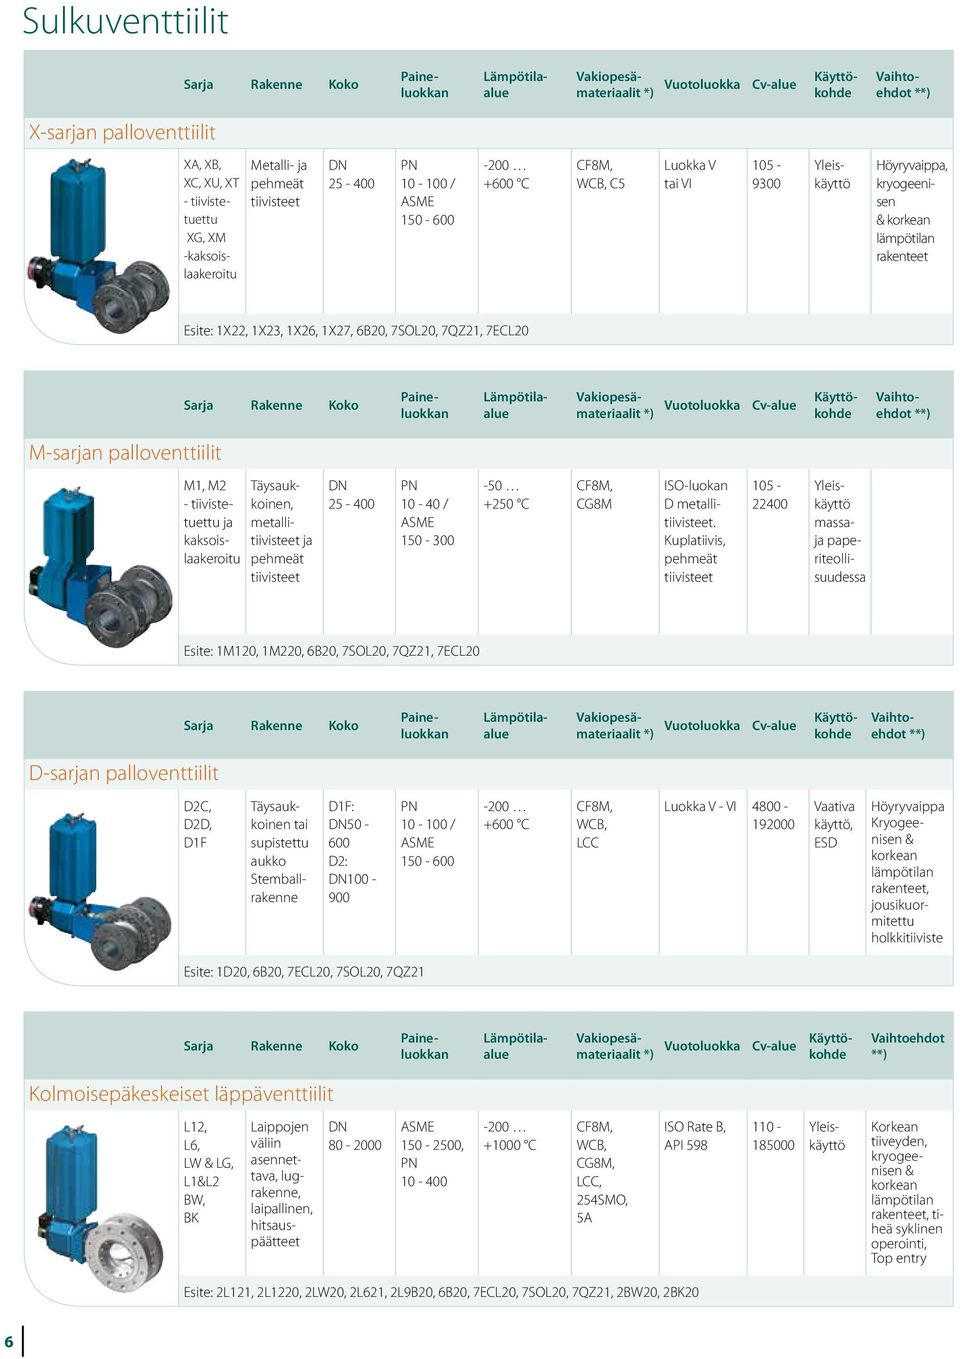 metallitiivisteet pehmeät tiivisteet 25-400 10-40 / 150-300 -50 +250 C CG8M ISO-luokan D metallitiivisteet.